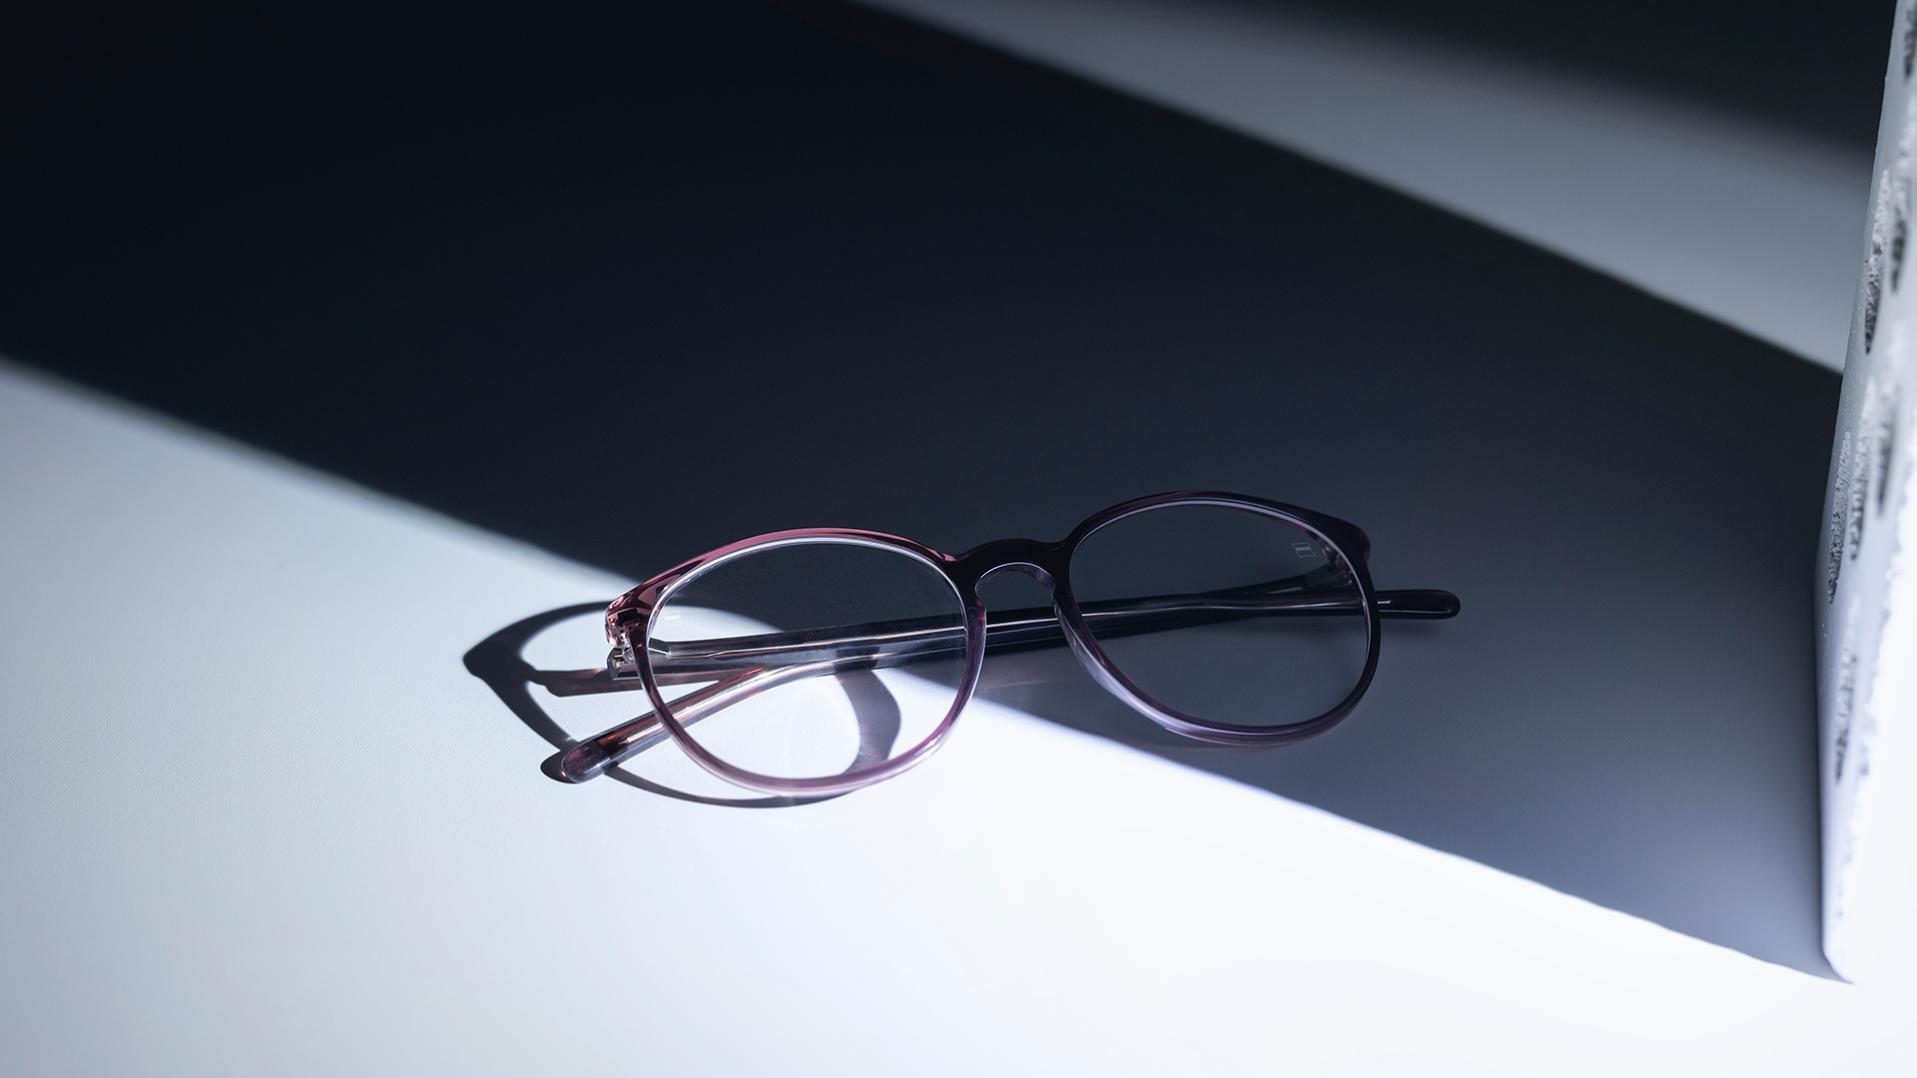 Een bril met ZEISS brillenglazen en DuraVision® coatings die half in de schaduw, half in de zon staat.